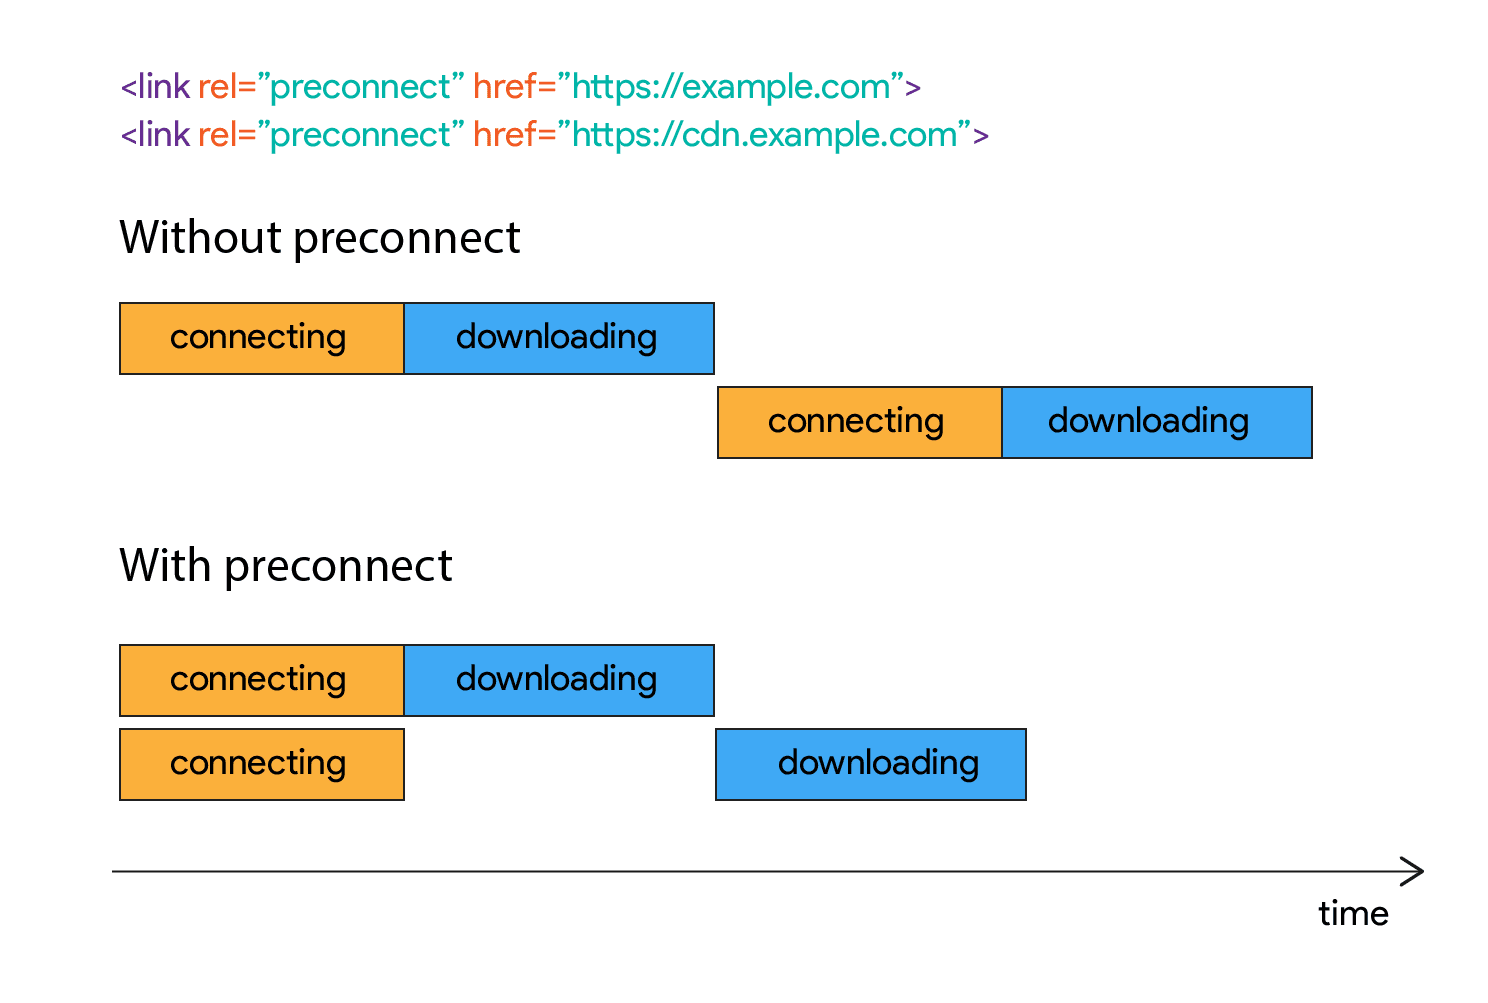 接続が確立されてからしばらくの間ダウンロードが開始されないことを示す図。